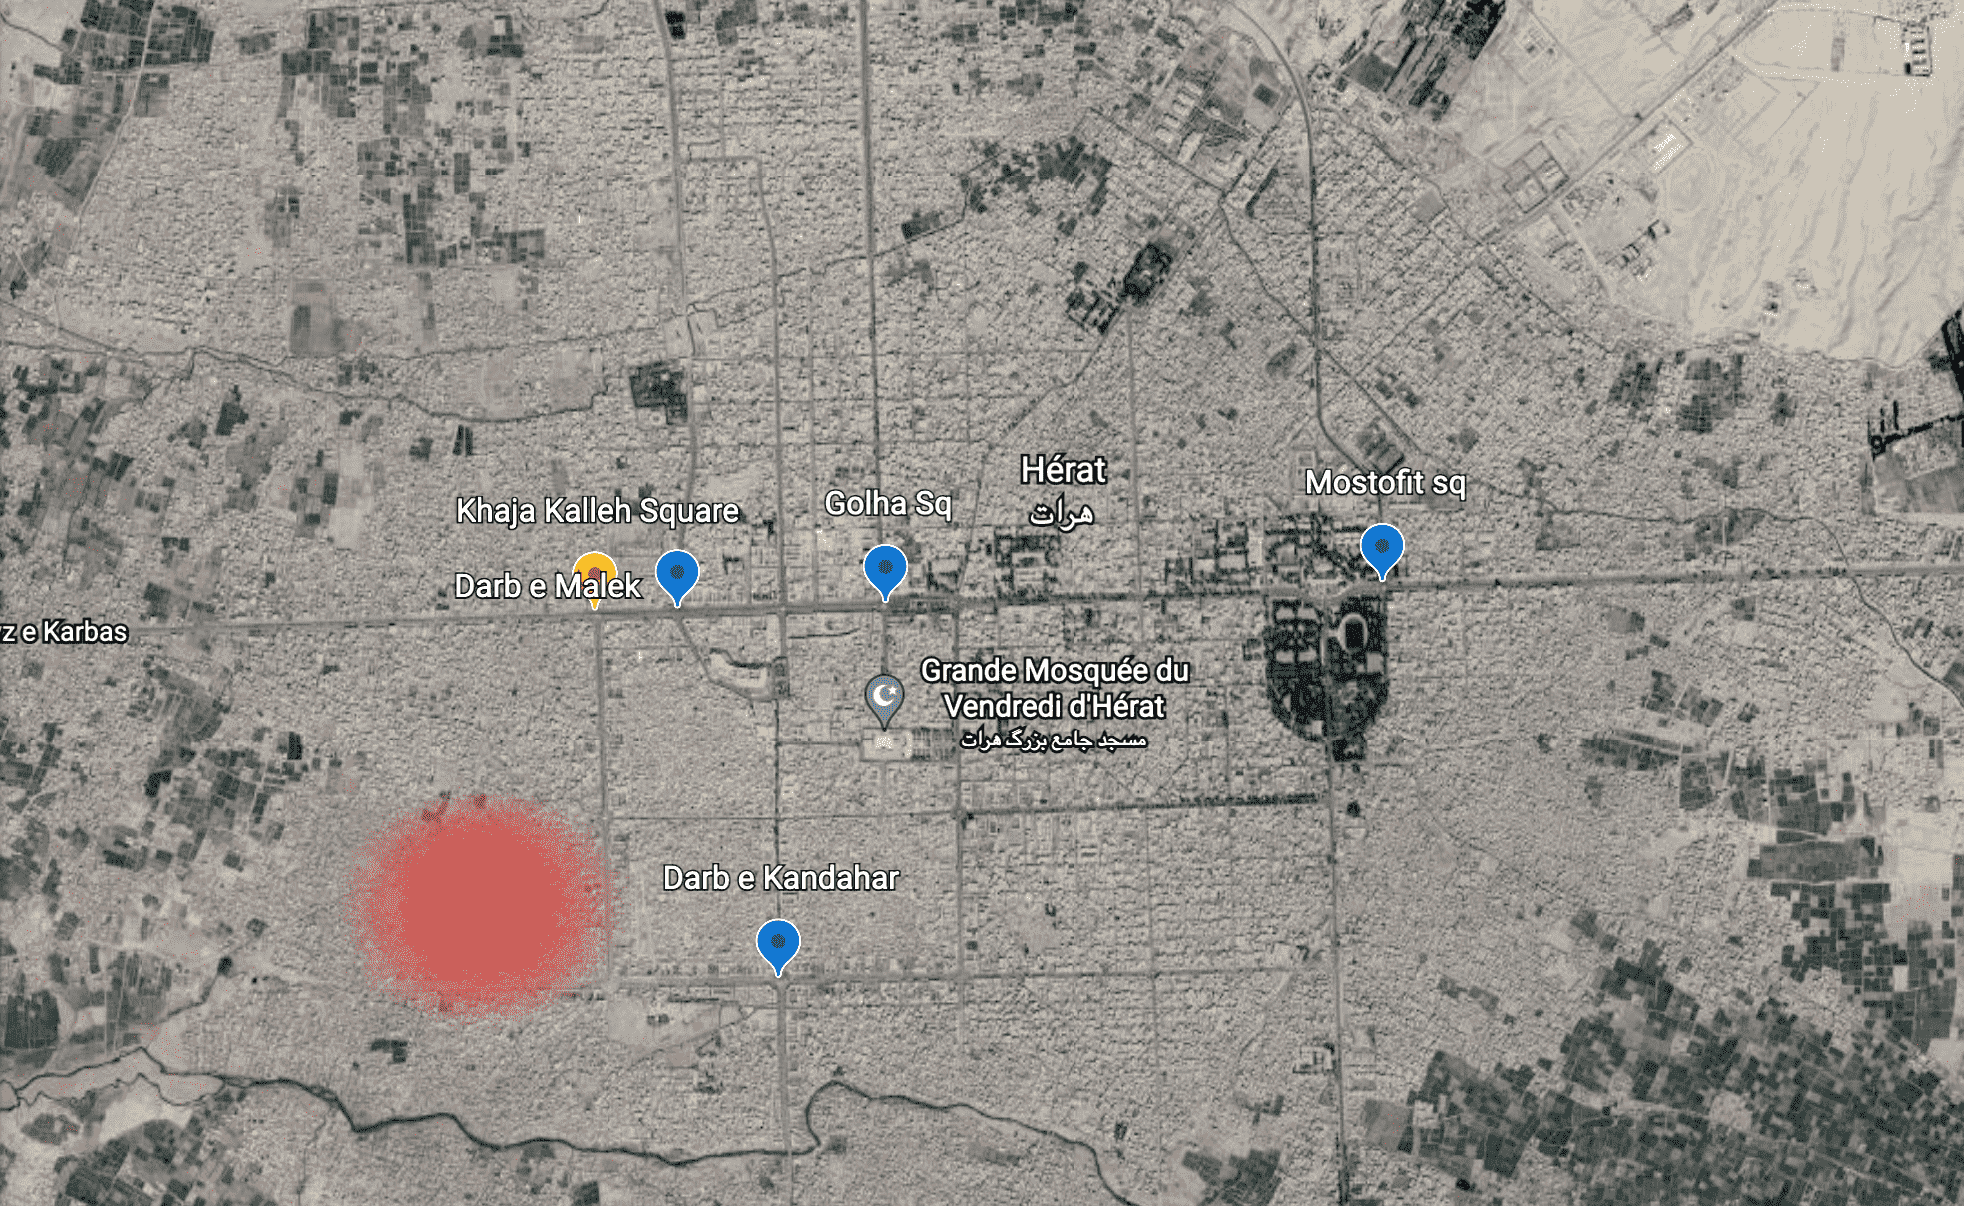 Die vier Leichen wurden an vier verschiedenen Orten in Herat, Darb-e-Malek, Golha, Mostofit und Darb-e-Kandahar (auf der Karte blau dargestellt) aufgehängt.  Laut afghanischen Medien fand die Entführung auf dem Khaja-Kalleh-Platz (gelb markiert) und die Schießerei zwischen Taliban-Beamten und den Entführern im 14. Bezirk der Stadt (rot markiert) statt.